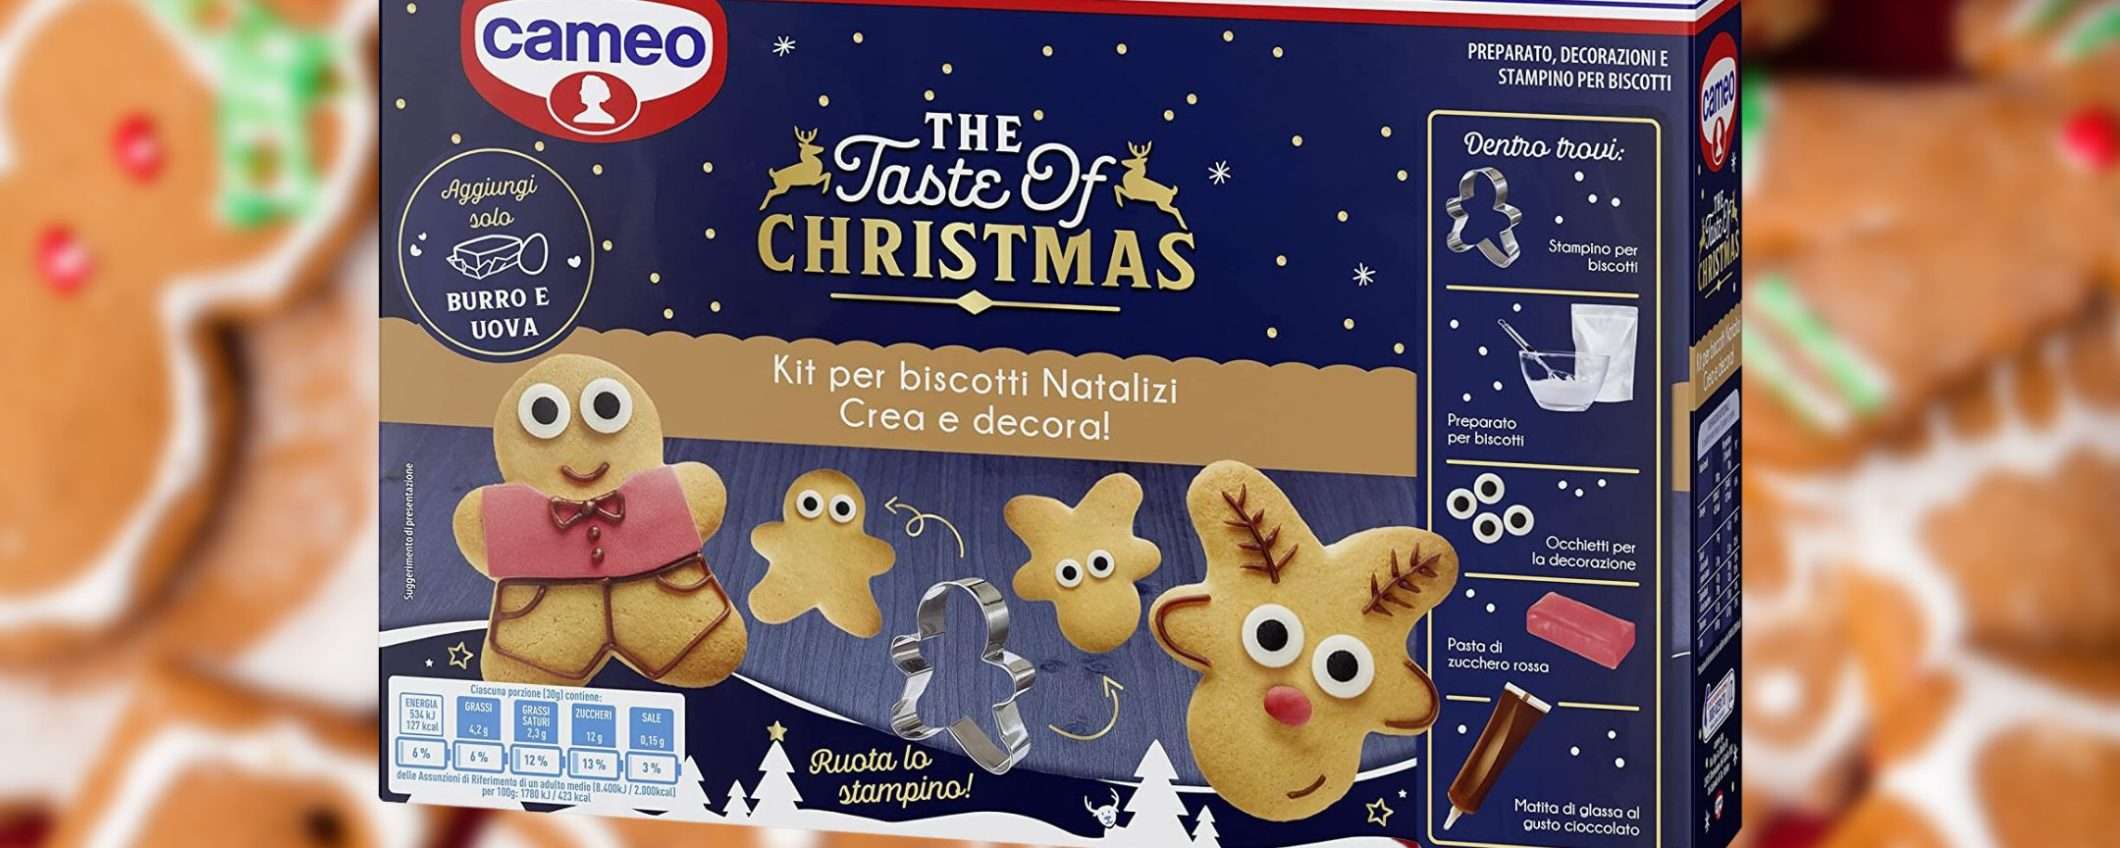 Biscotti di Natale BELLISSIMI: il kit Cameo completo è su Amazon a 5€